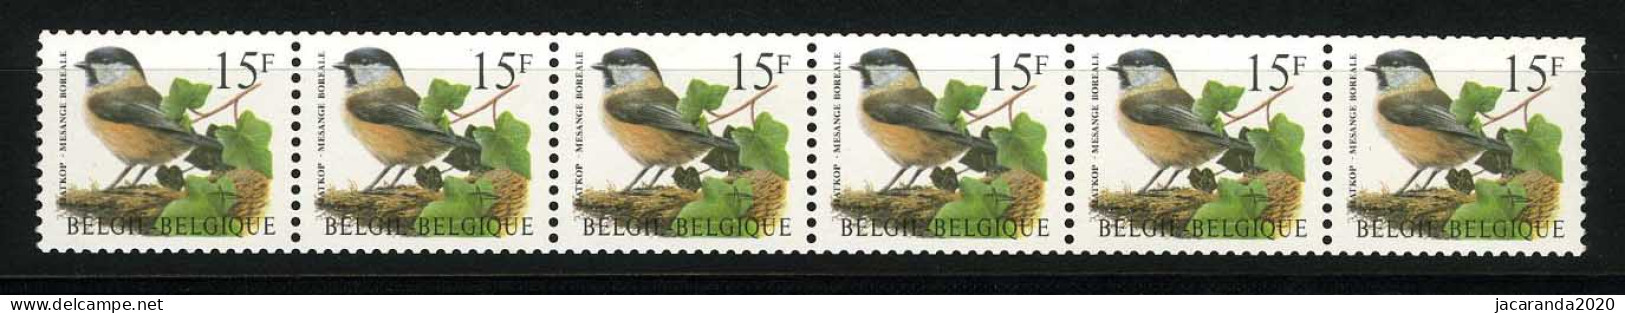 België R81a - Vogels - Oiseaux - Buzin (2732) - Strook Van 6 ZONDER NUMMER - SANS NUMERO - ZELDZAAM - RARE - Rouleaux